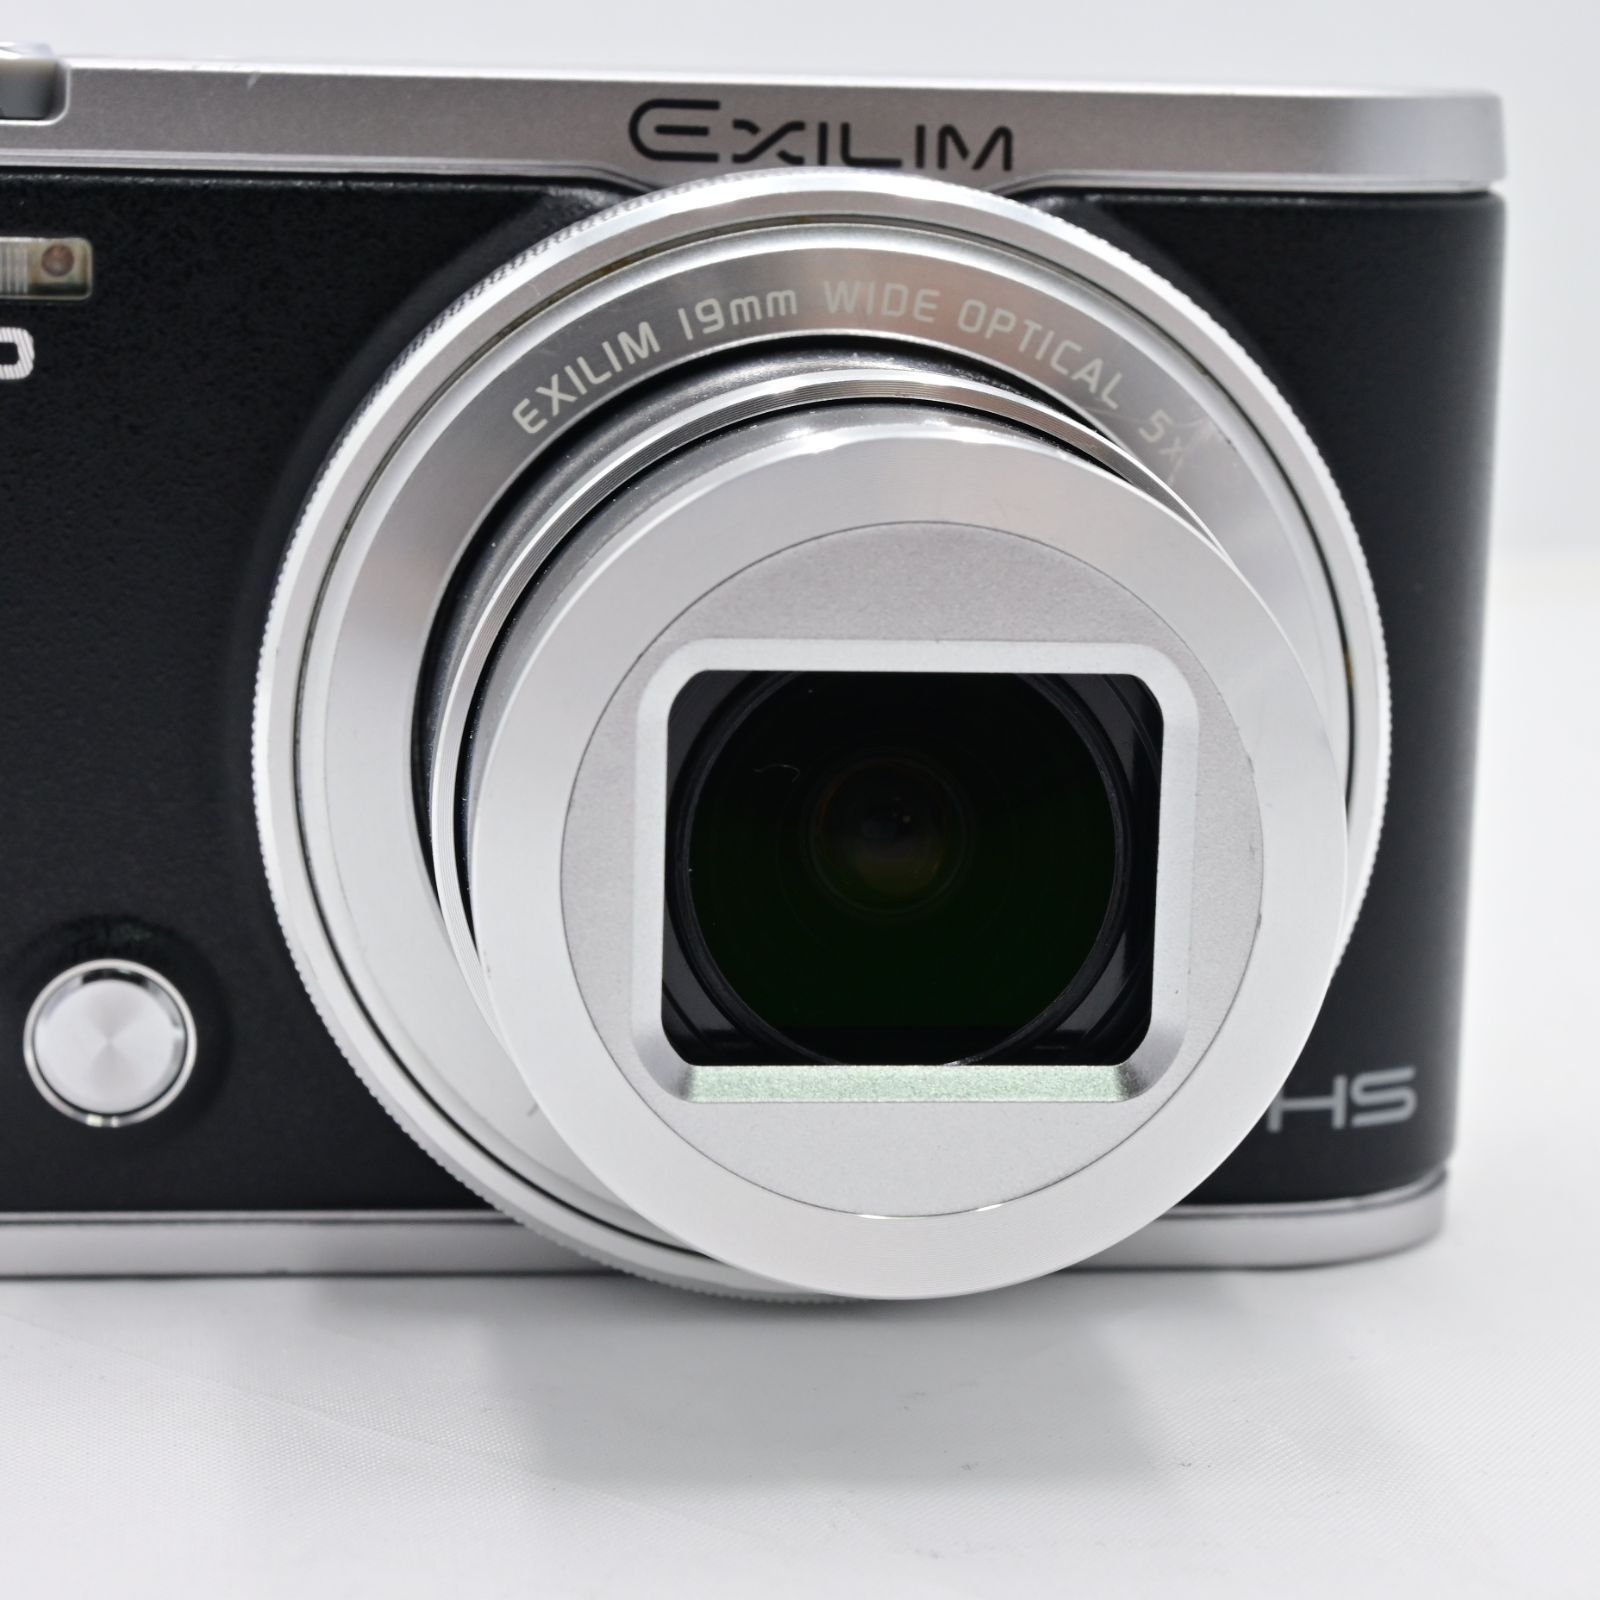 CASIO】カシオ デジタルカメラ EXILIM EX-ZR4000BK - デジタルカメラ